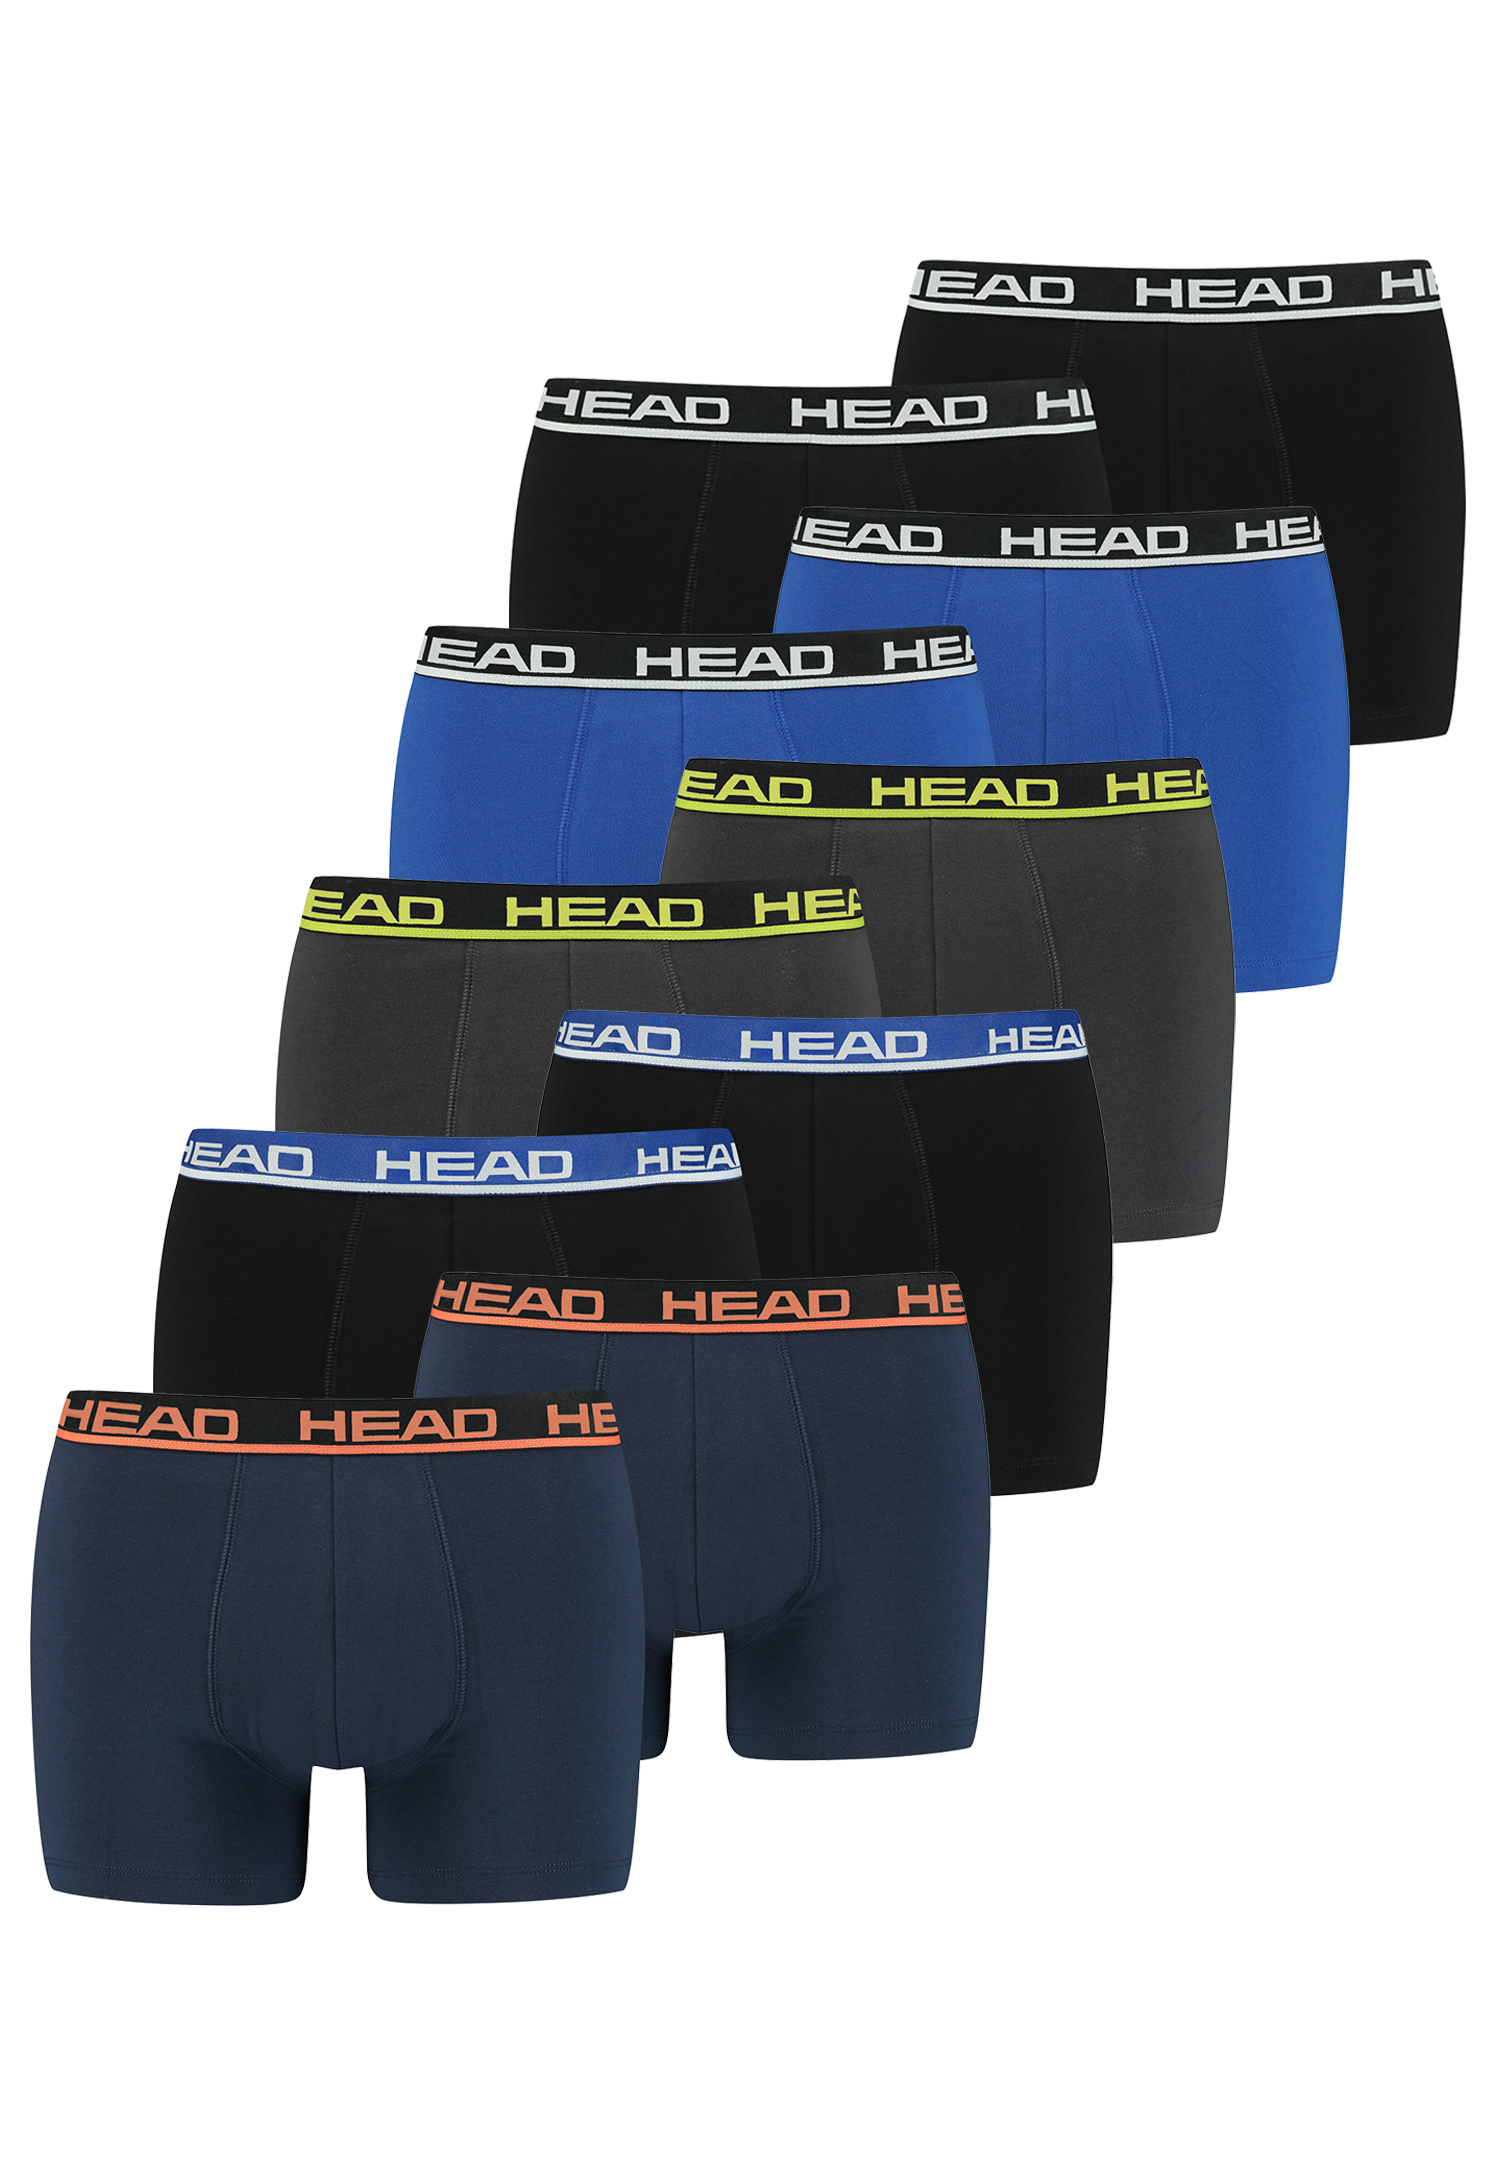 Head Herren Basic Boxer Pant Shorts Unterwäsche Unterhose 10 er Pack von HEAD